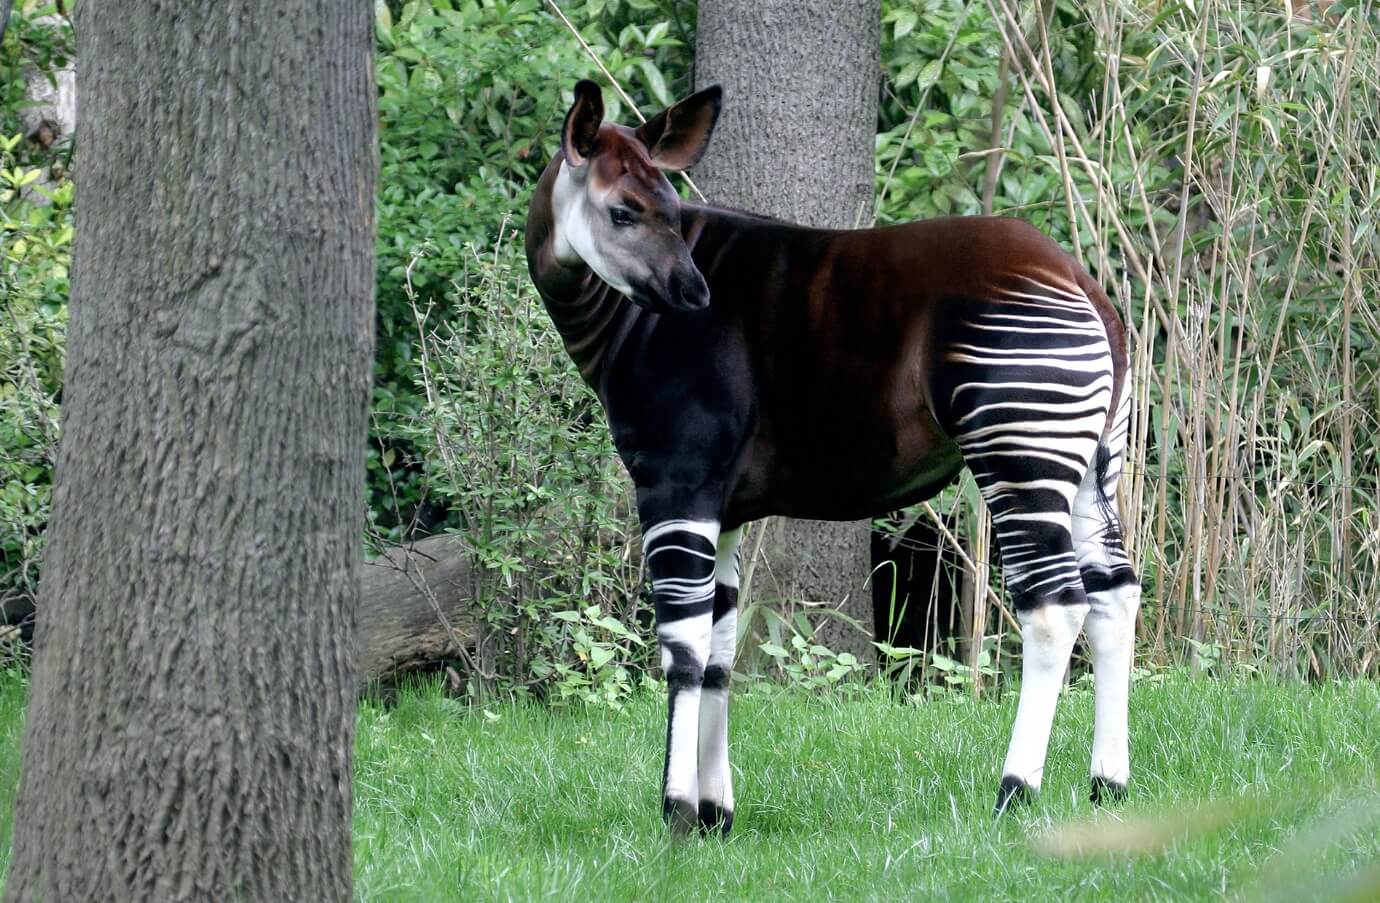 Окапи: неуловимое животное с головой жирафа и ногами зебры. Окапи — неуловимое животное республики Конго. Источник: sigmaearth.com. Фото.